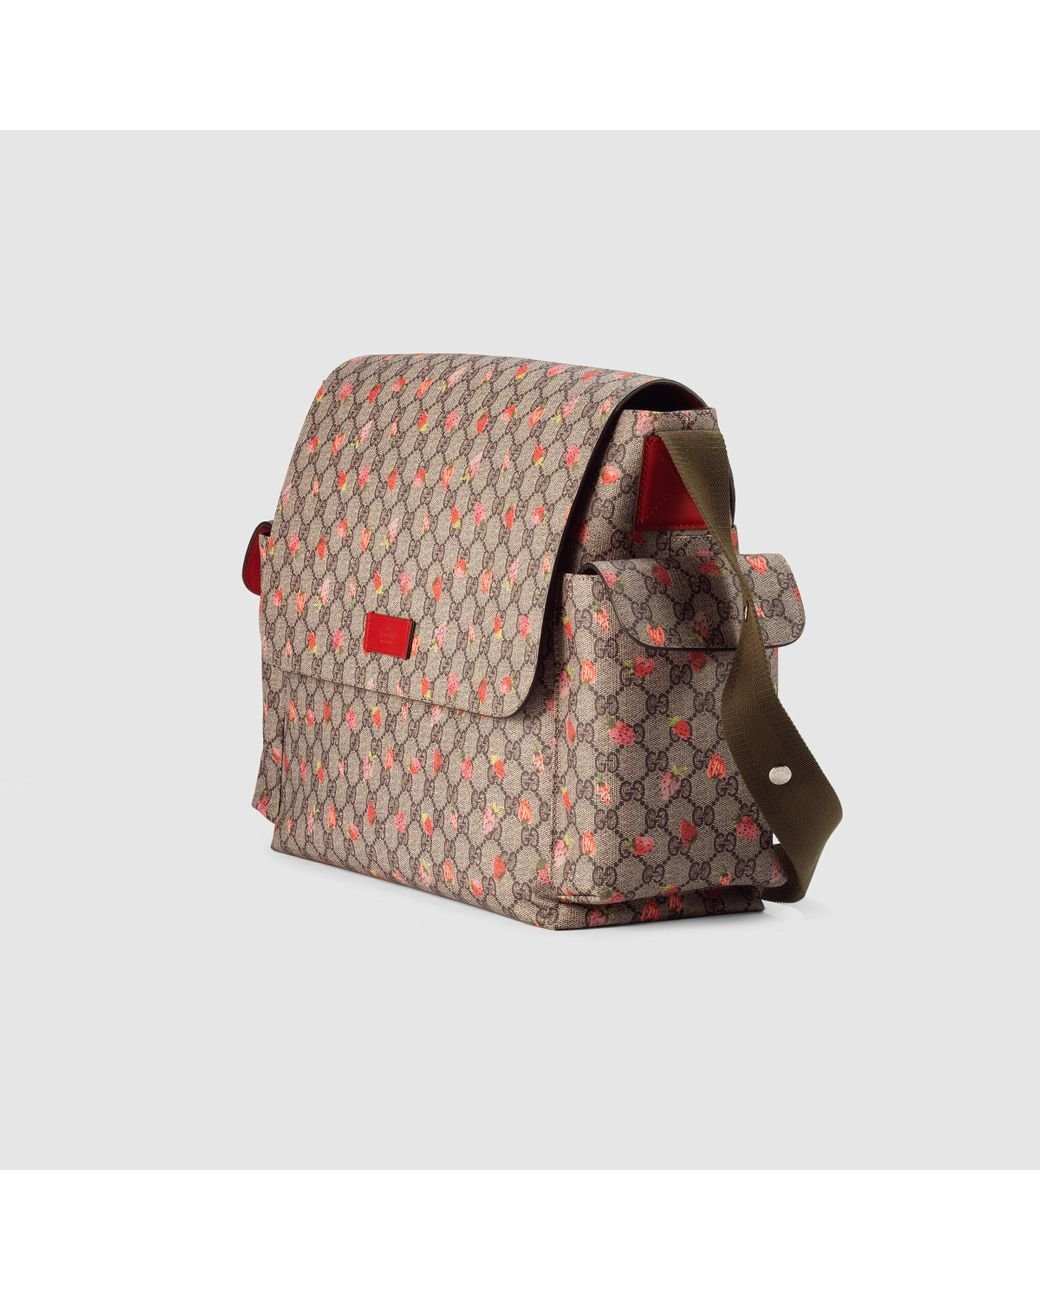 Gucci Strawberry Print GG Canvas Diaper Bag Beige Multicolor New